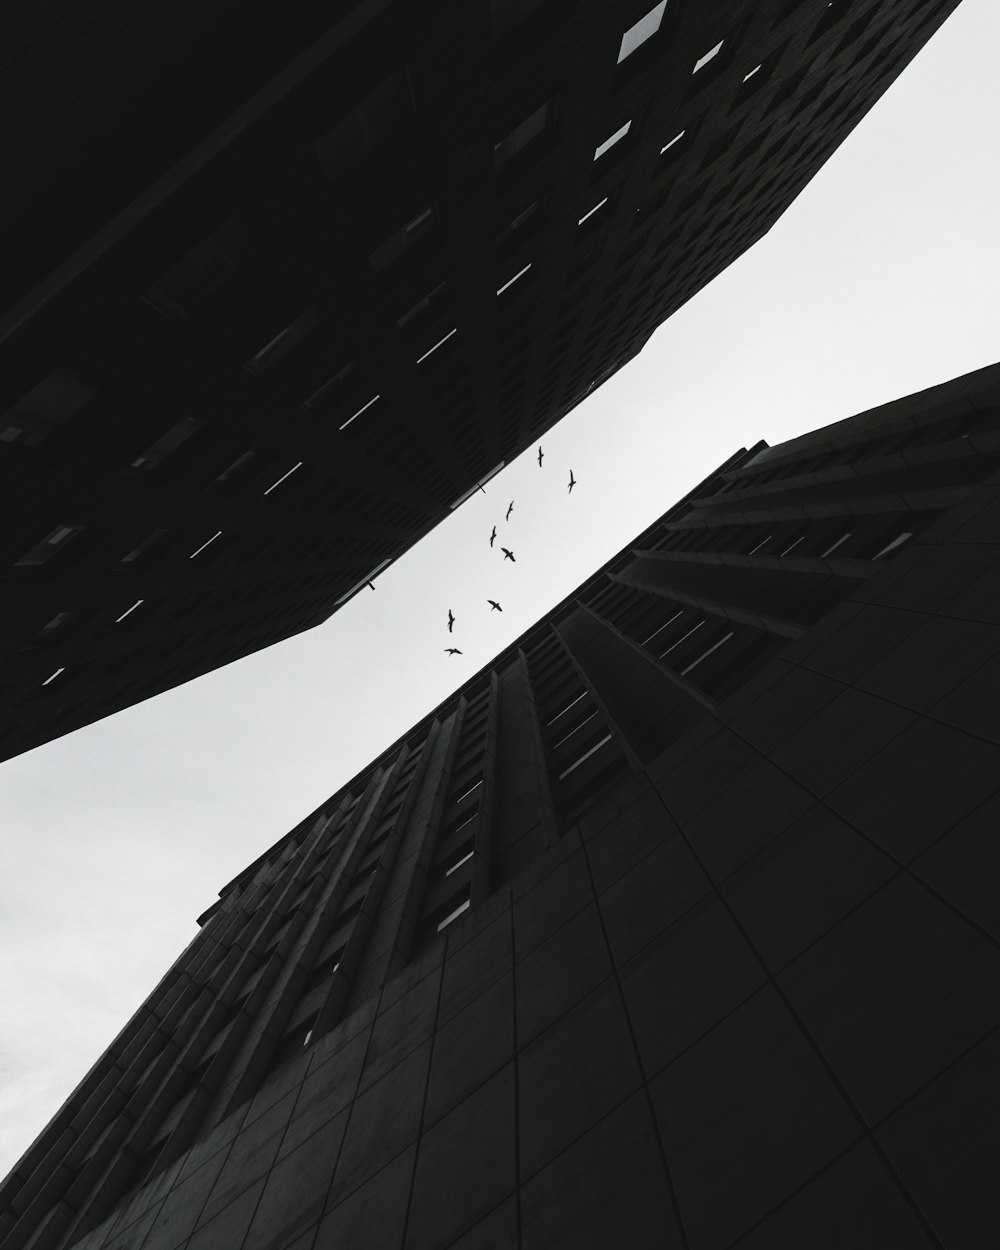 Vue en contre-plongée d’un oiseau volant entre les bâtiments